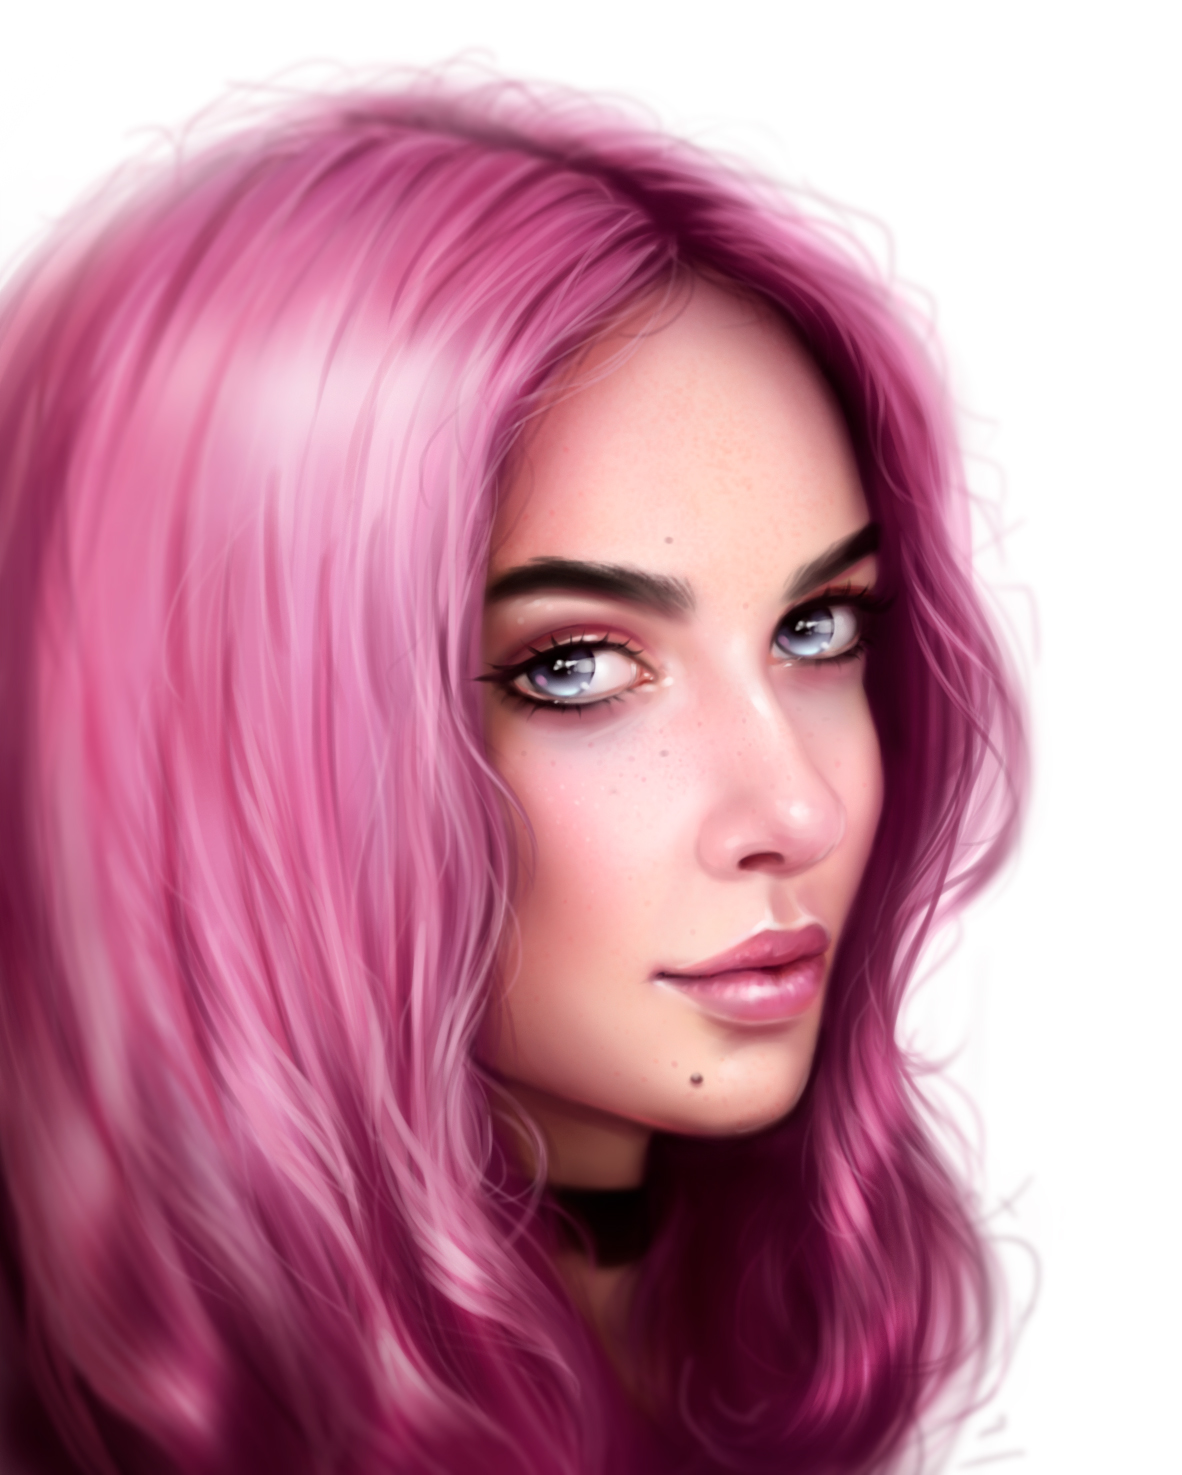 Картинки розовых девушек. Розовые волосы арт. Арты девушек с розовыми волосами. Артдевушка с розвыоми волсоами. Девочка с розовыми волосами арт.